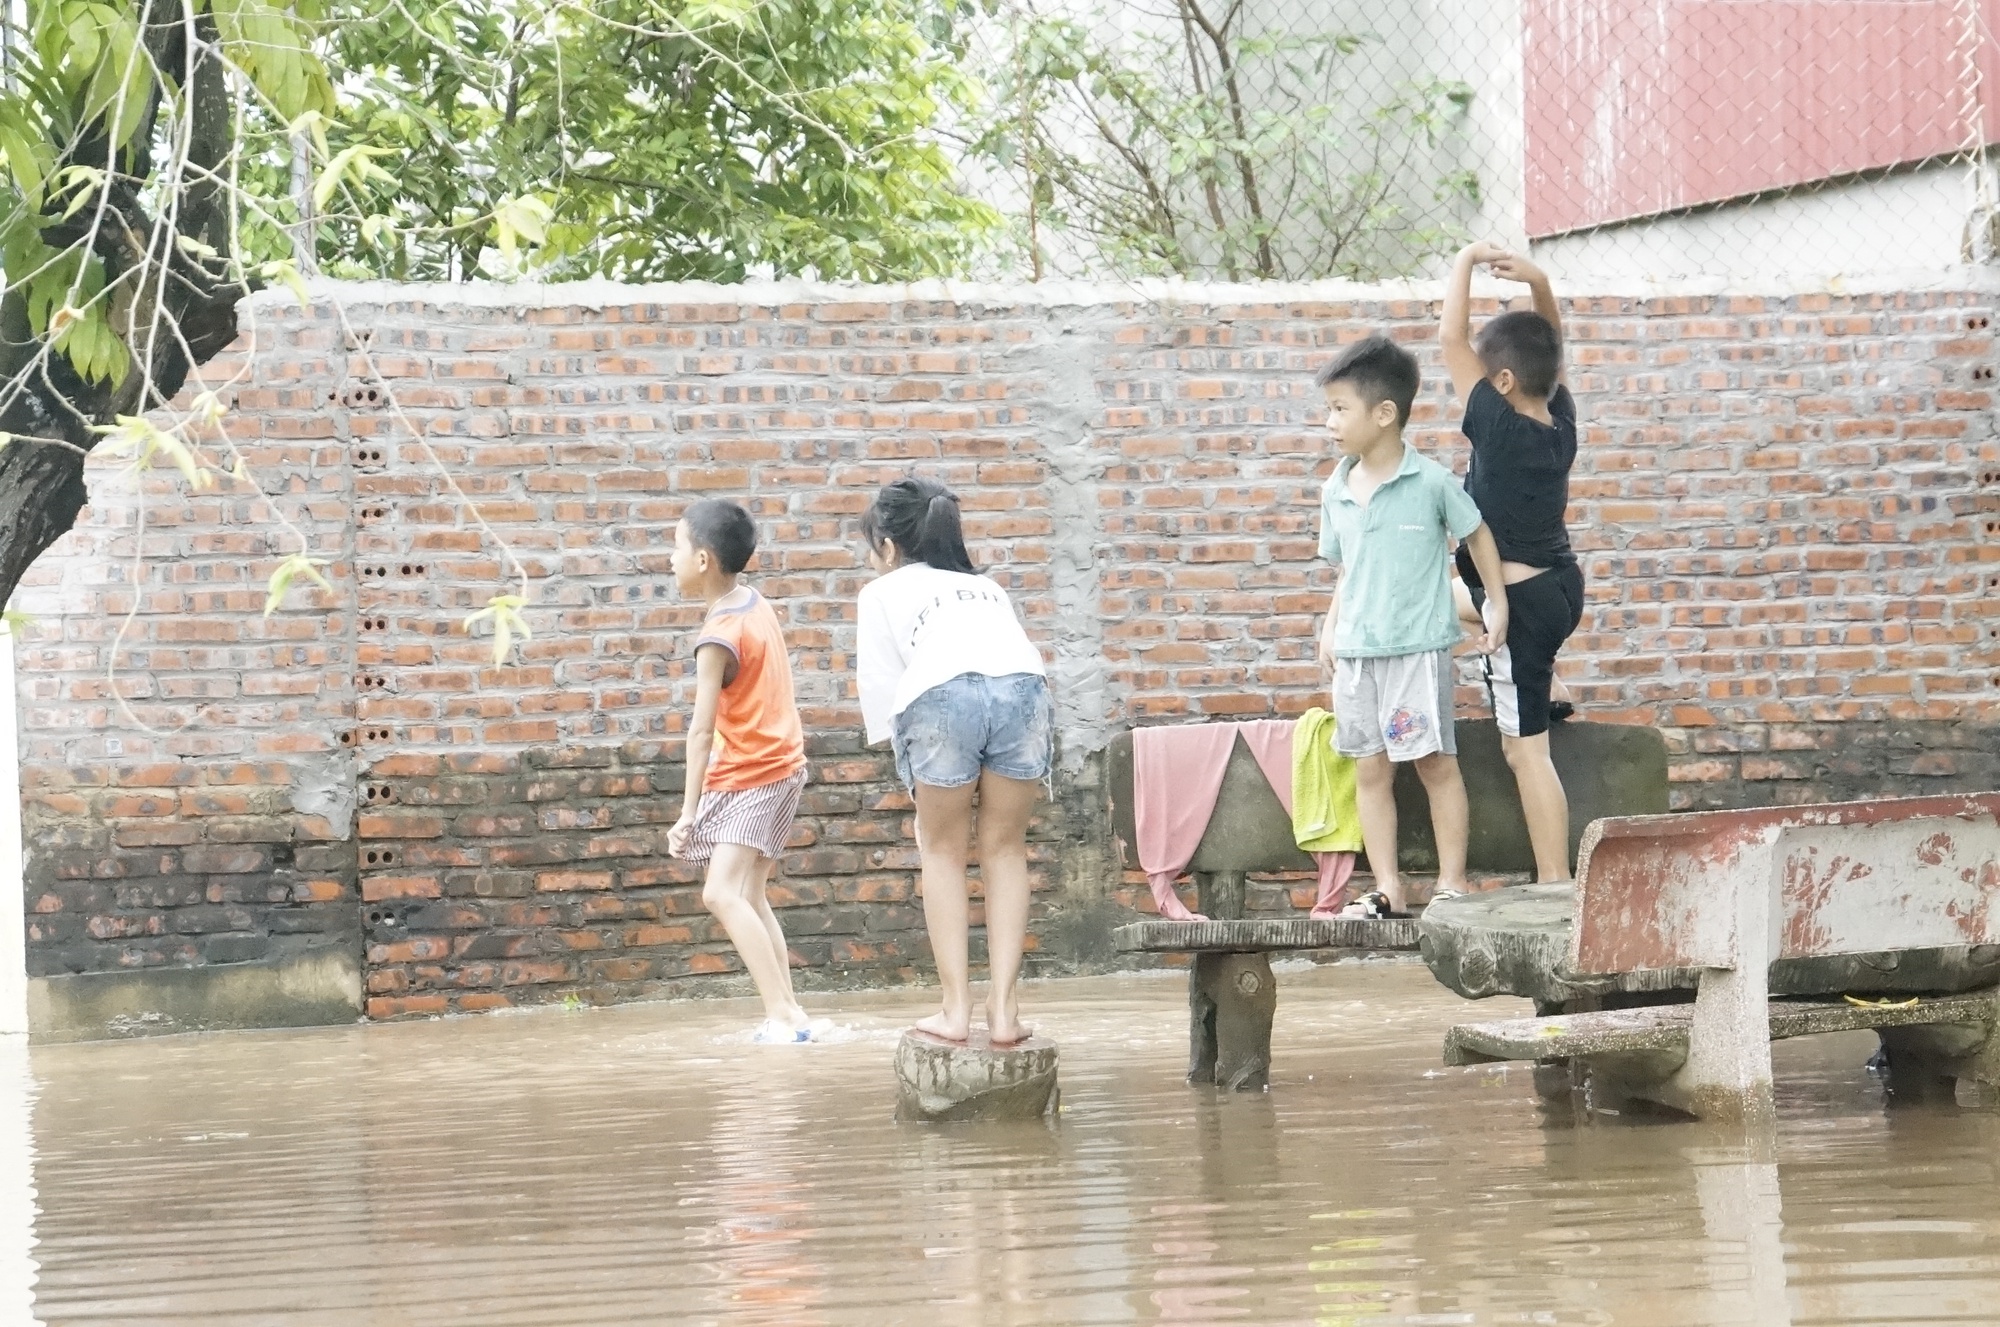 Trẻ em nô đùa lúc nước dâng cao cần phải có sự giám sát của người lớn